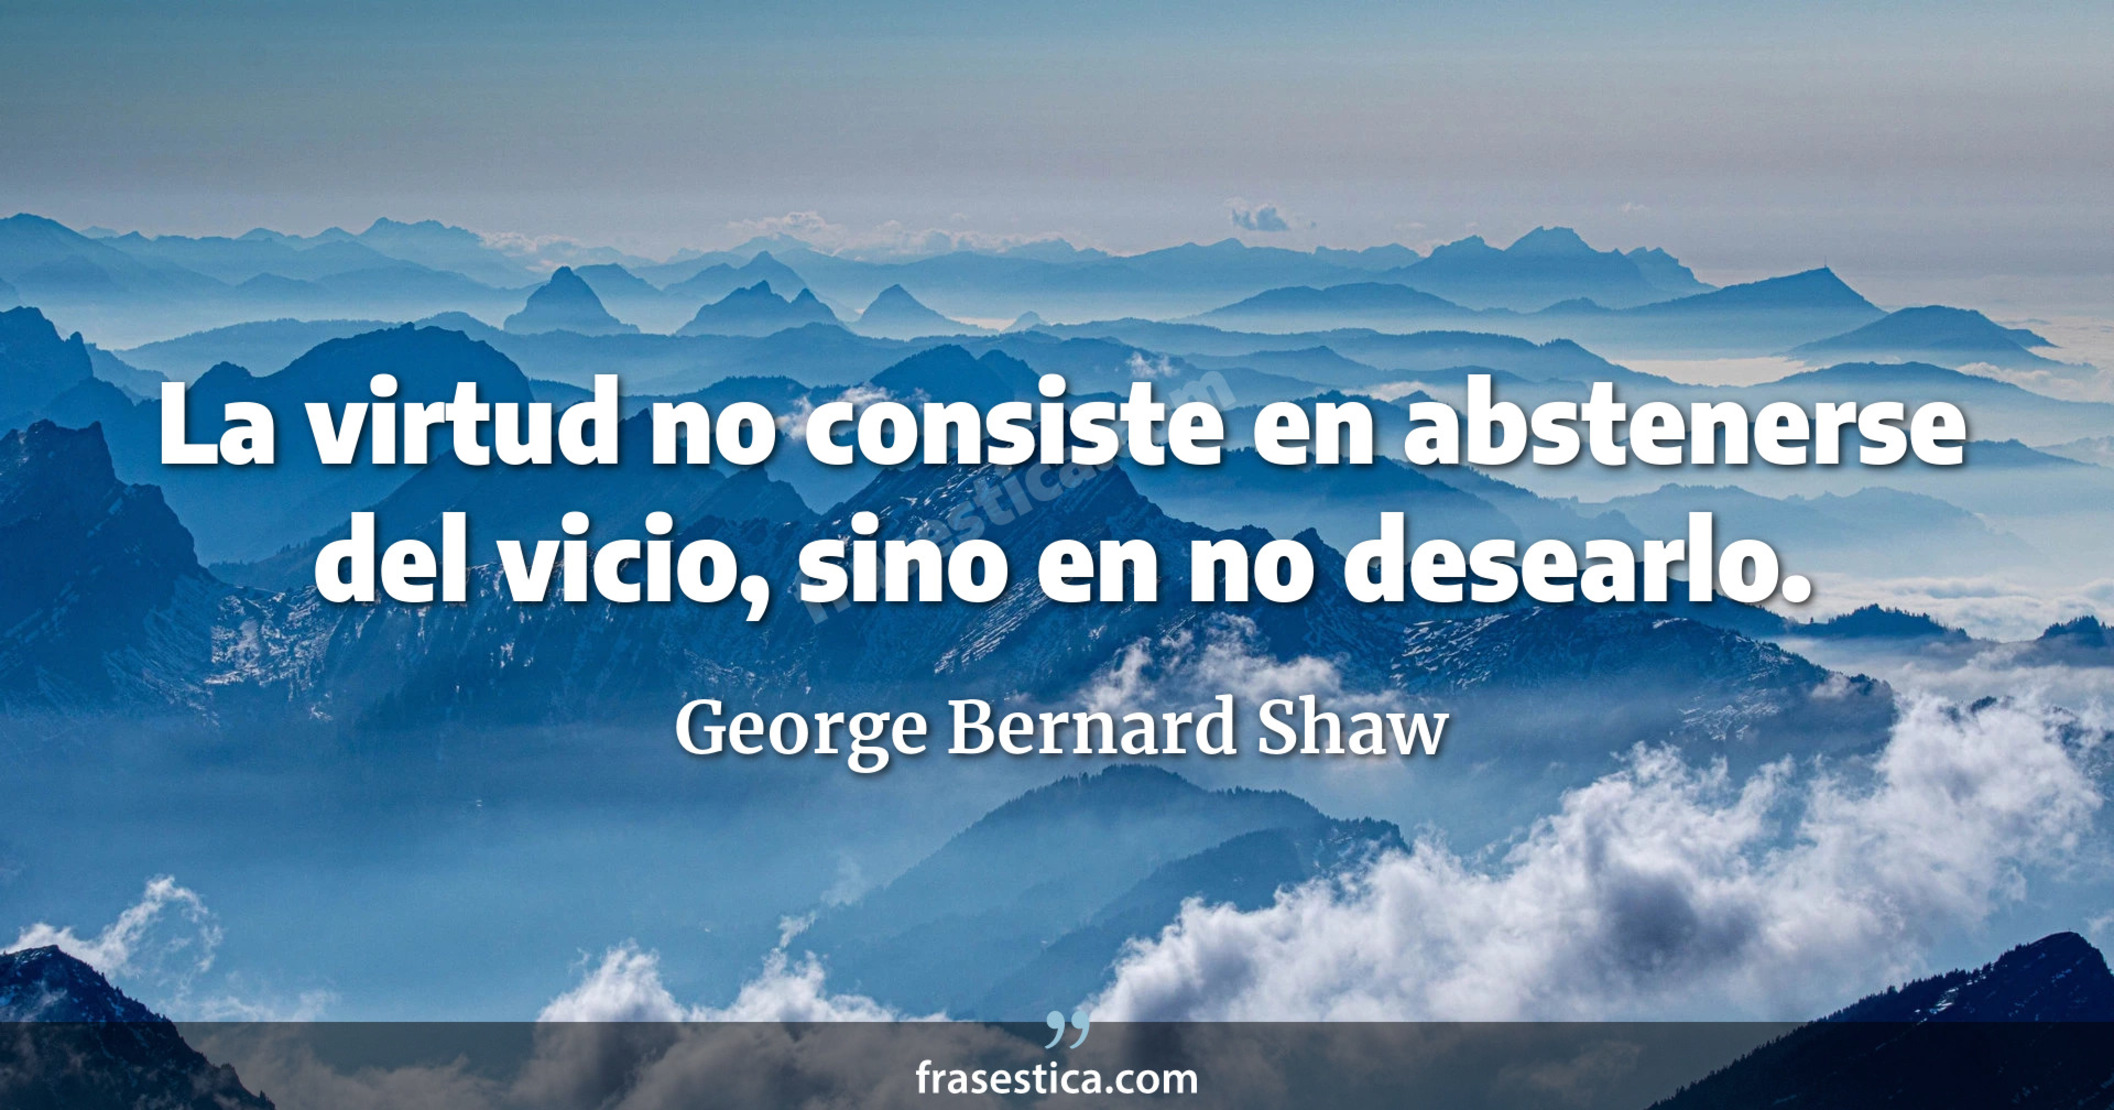 La virtud no consiste en abstenerse del vicio, sino en no desearlo. - George Bernard Shaw